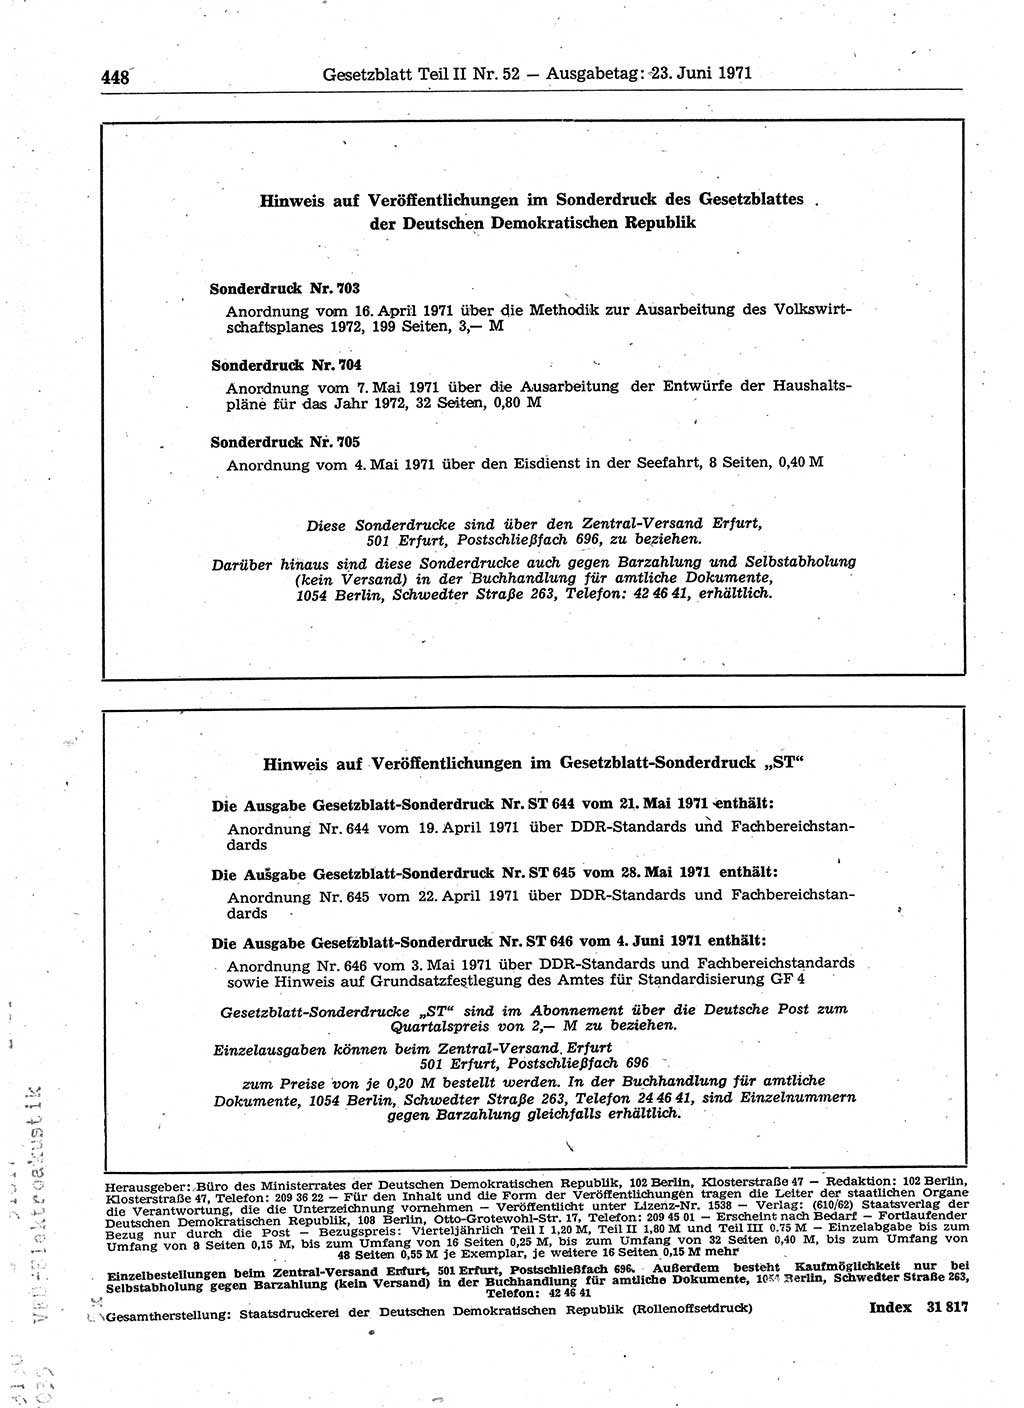 Gesetzblatt (GBl.) der Deutschen Demokratischen Republik (DDR) Teil ⅠⅠ 1971, Seite 448 (GBl. DDR ⅠⅠ 1971, S. 448)